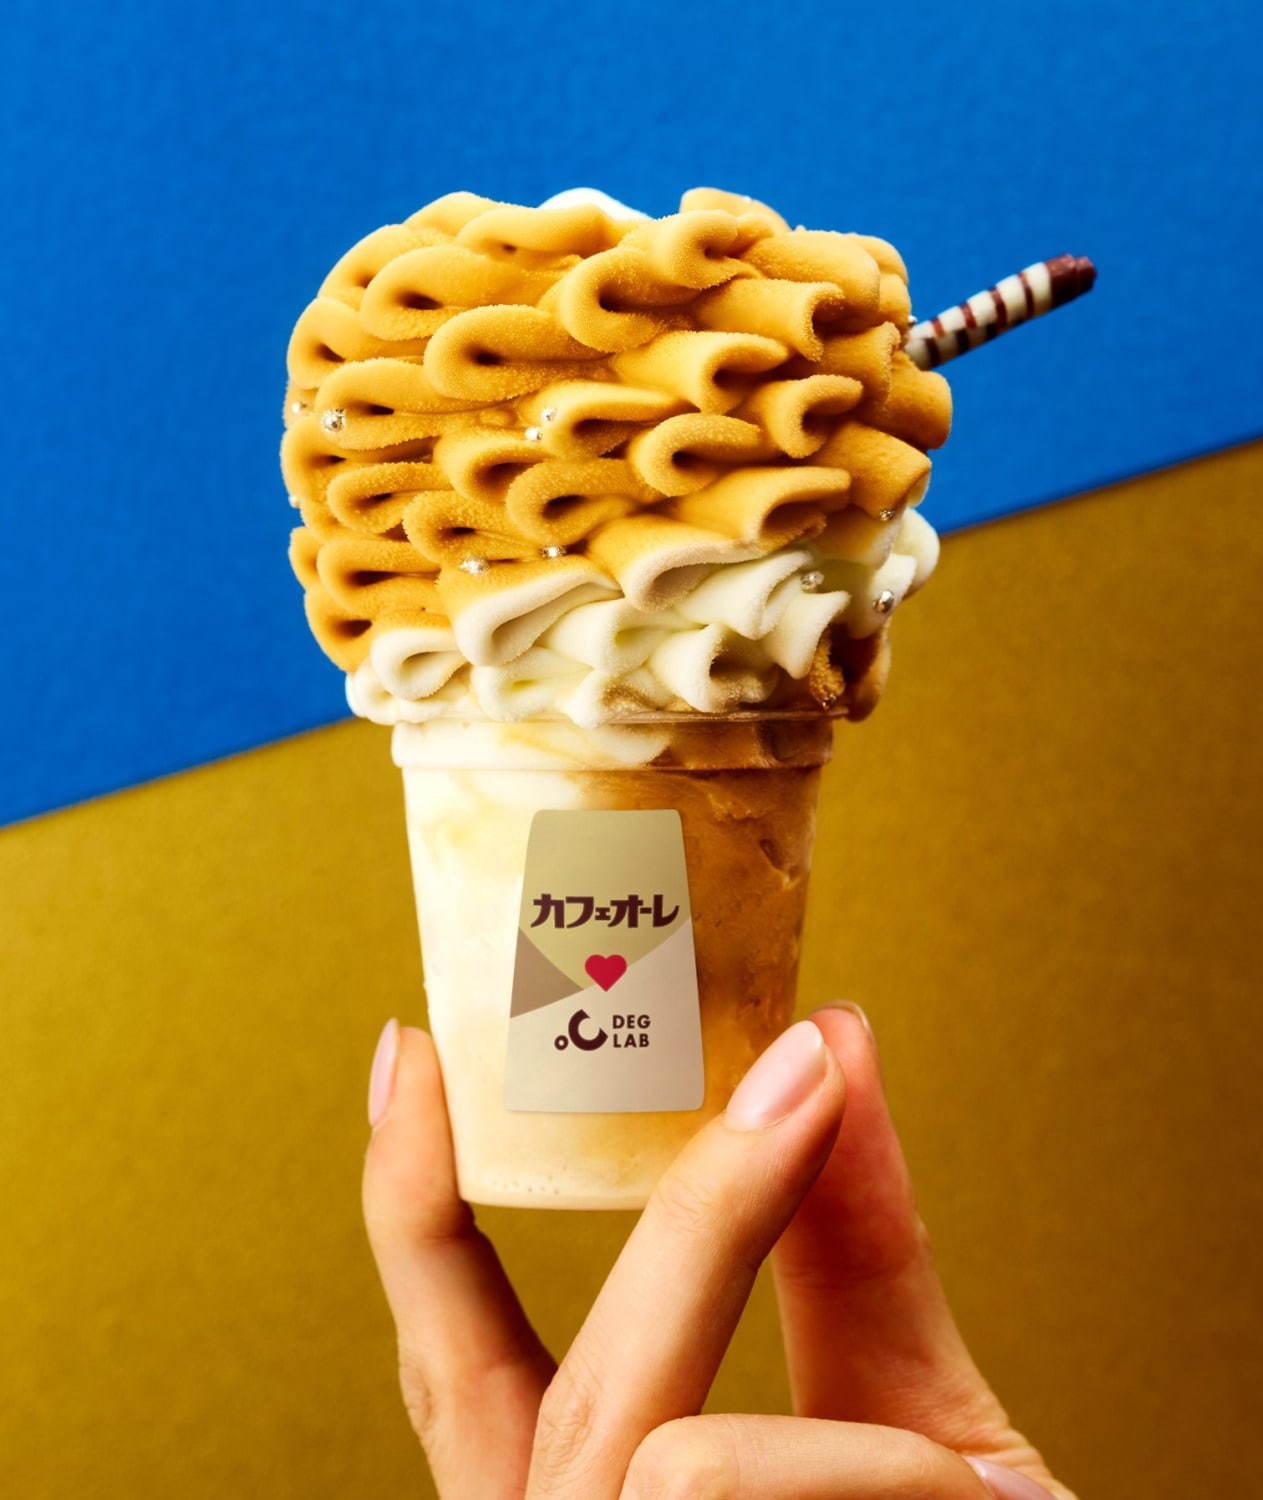 「エアリーソフトクリーム グリコのカフェオーレ」600円(税込)